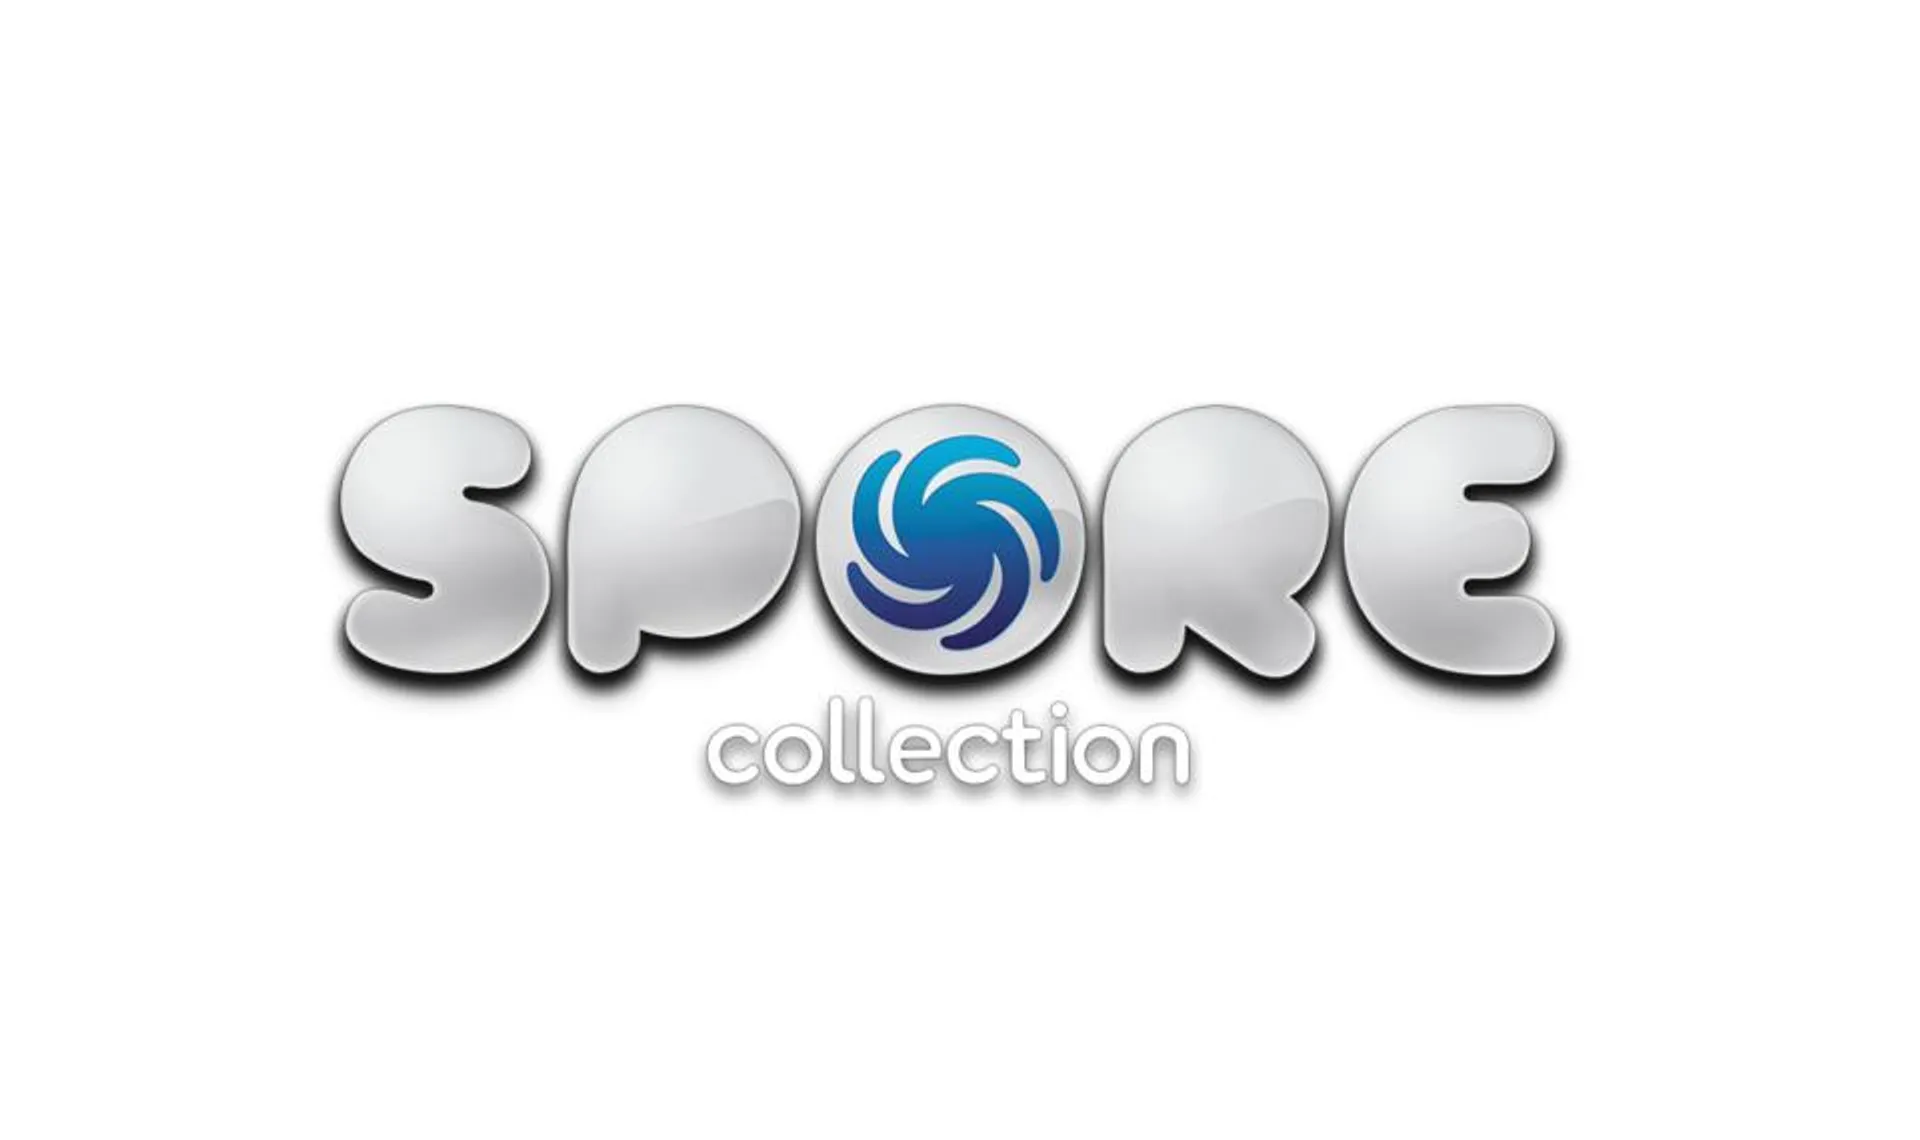 SPORE™ Collection